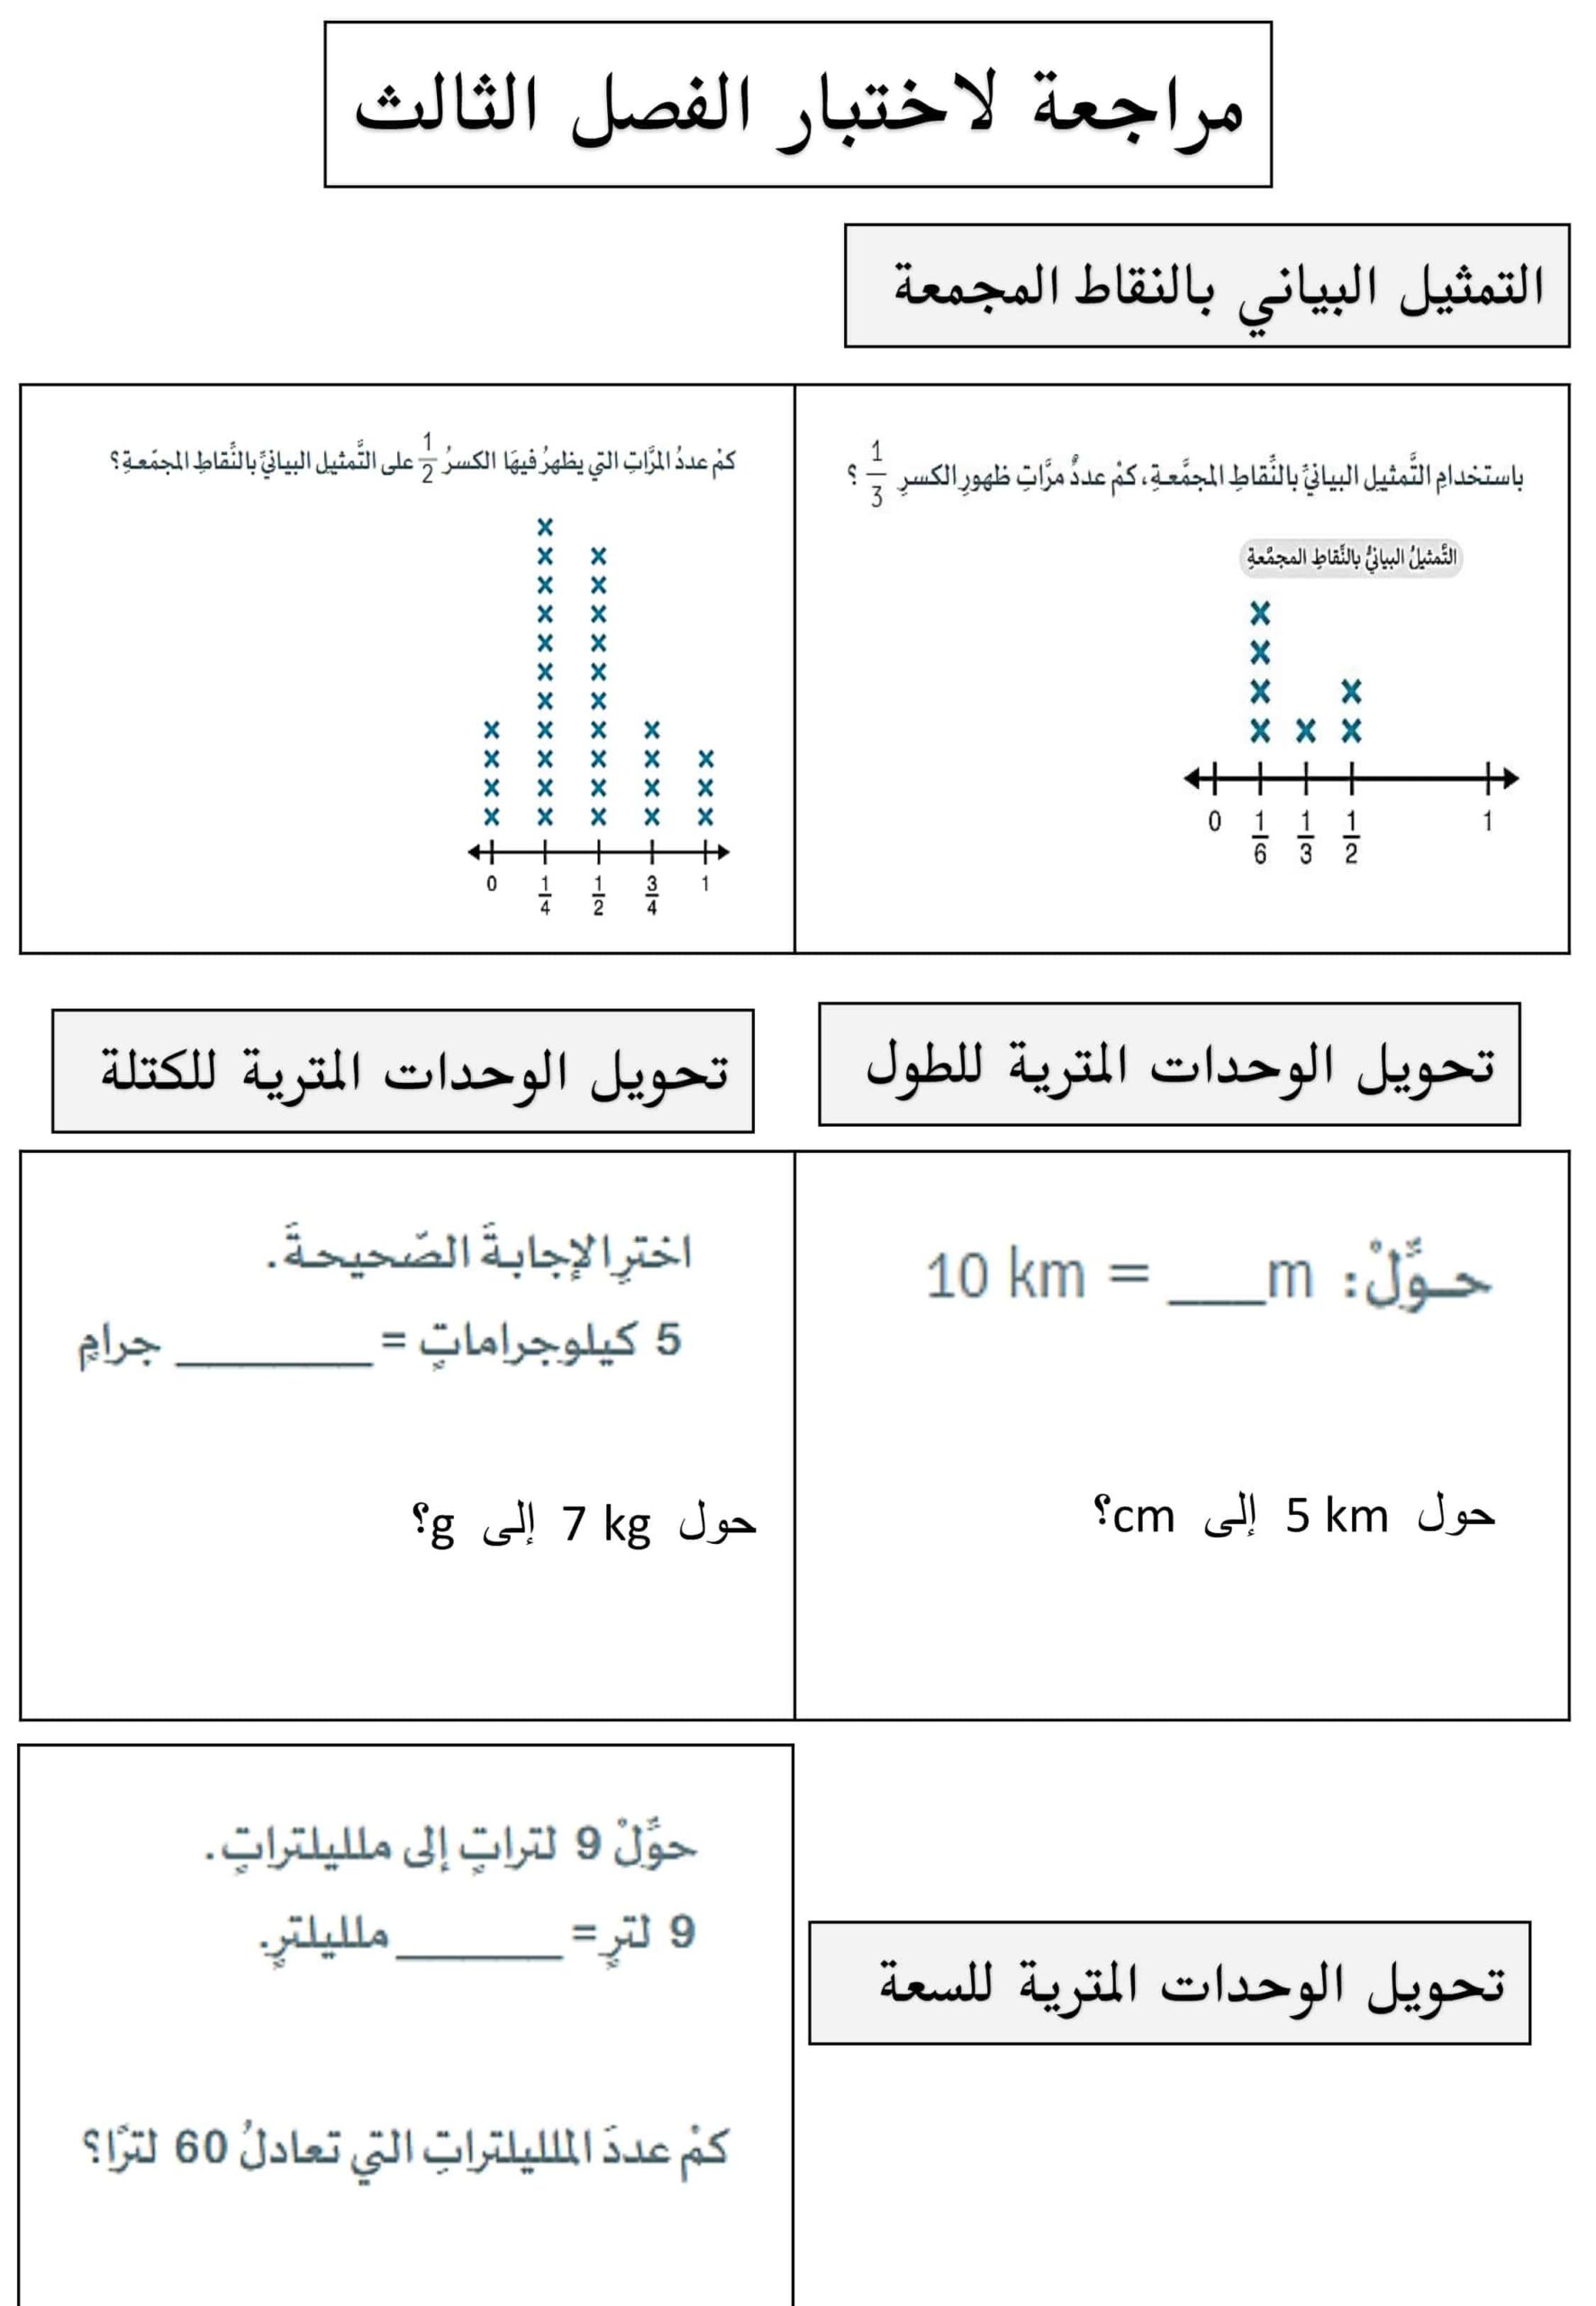 أوراق عمل مراجعة للاختبار الرياضيات المتكاملة الصف الخامس